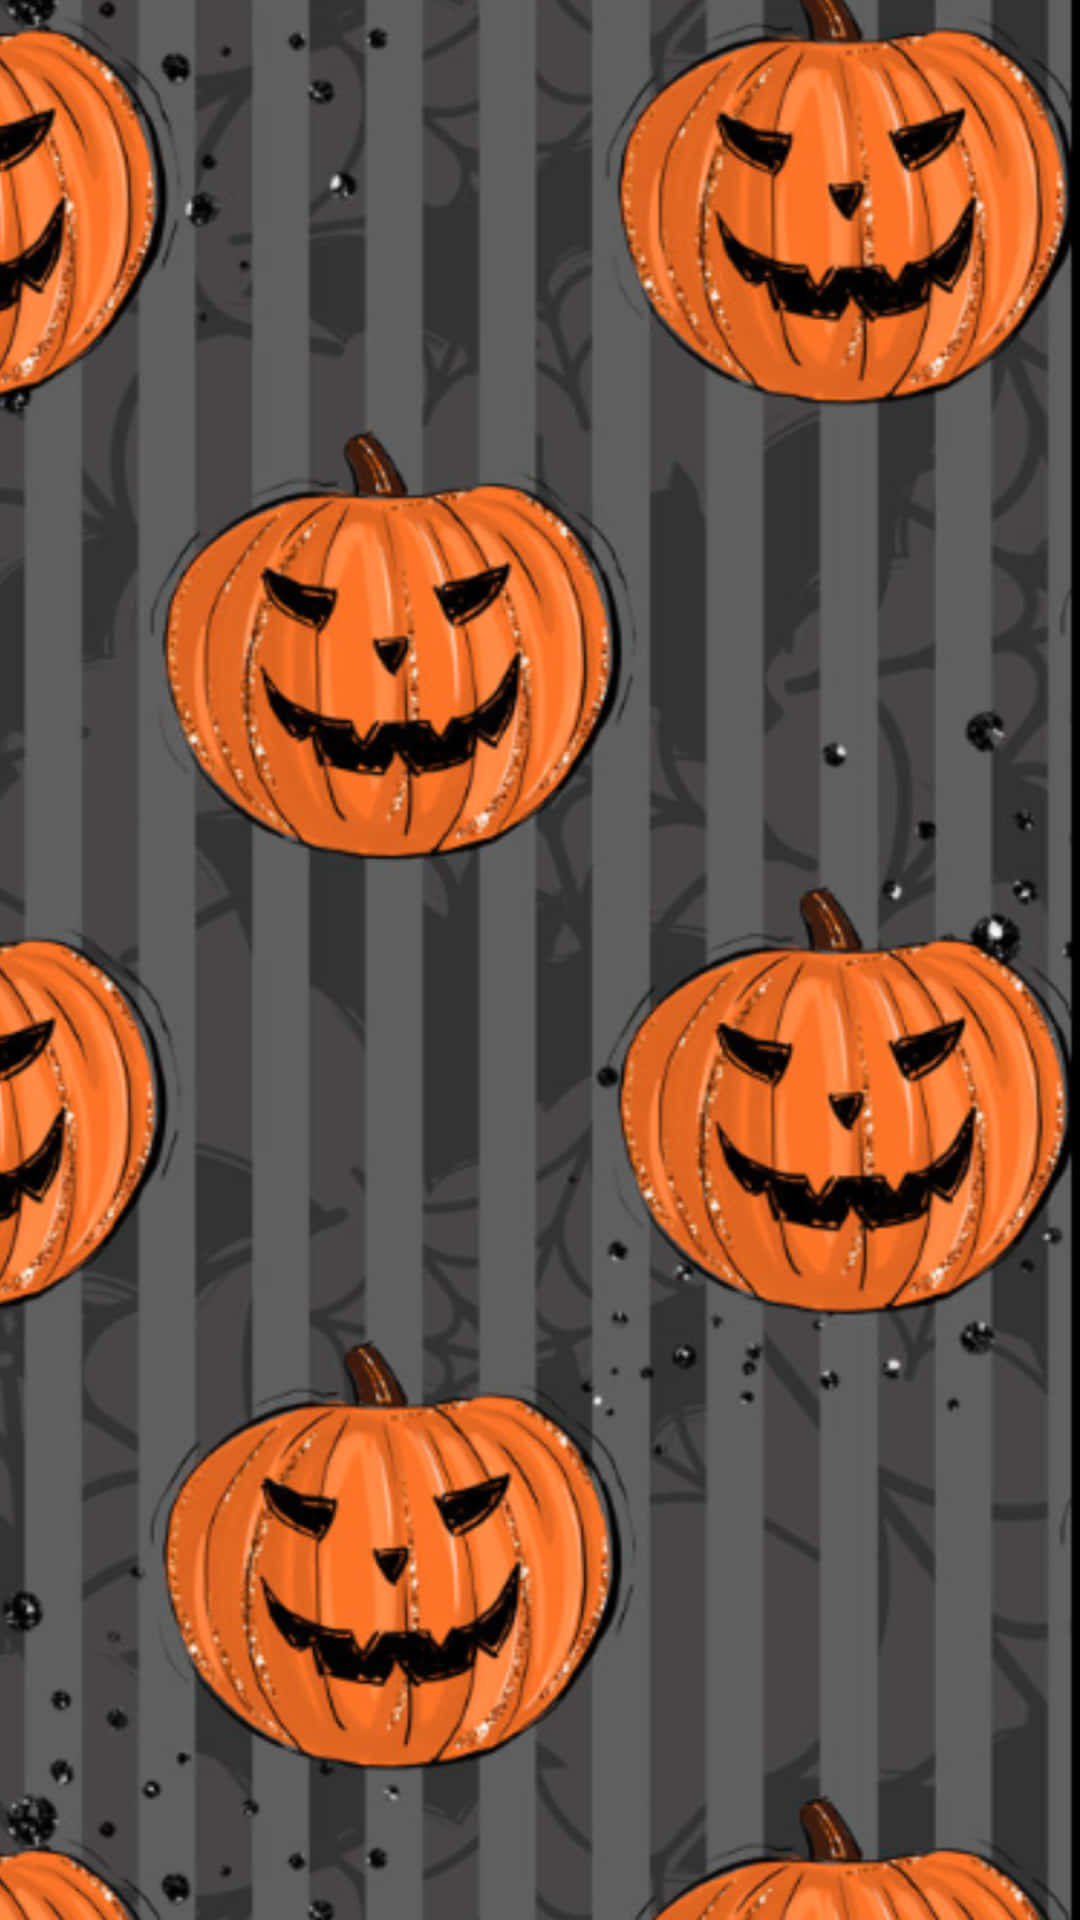 Halloween Pumpkin Pattern.jpg Wallpaper